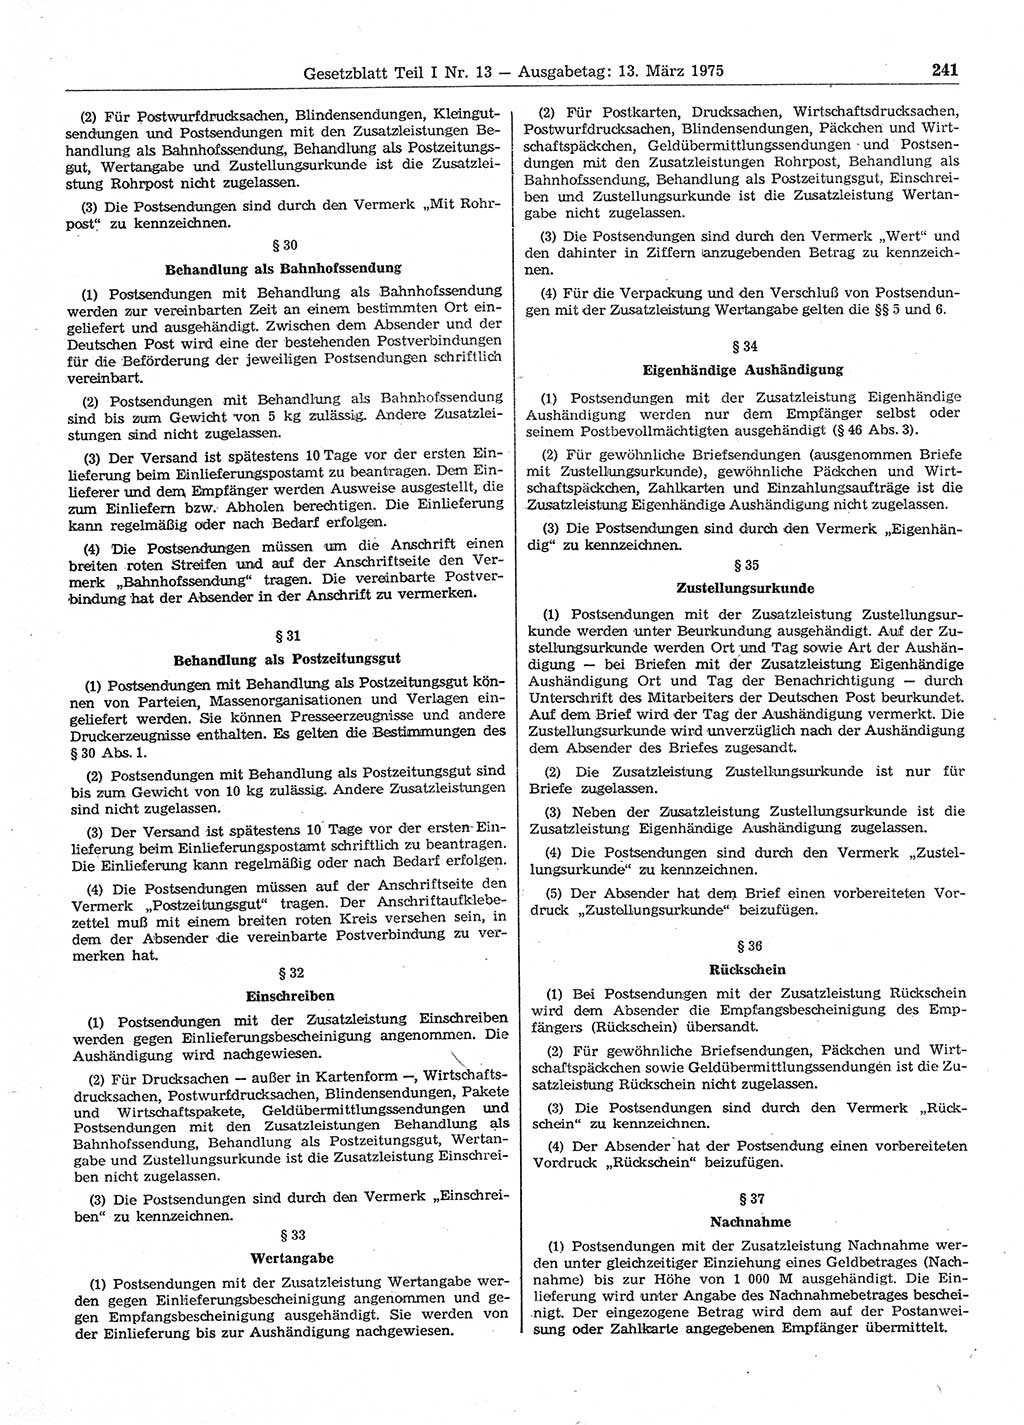 Gesetzblatt (GBl.) der Deutschen Demokratischen Republik (DDR) Teil Ⅰ 1975, Seite 241 (GBl. DDR Ⅰ 1975, S. 241)